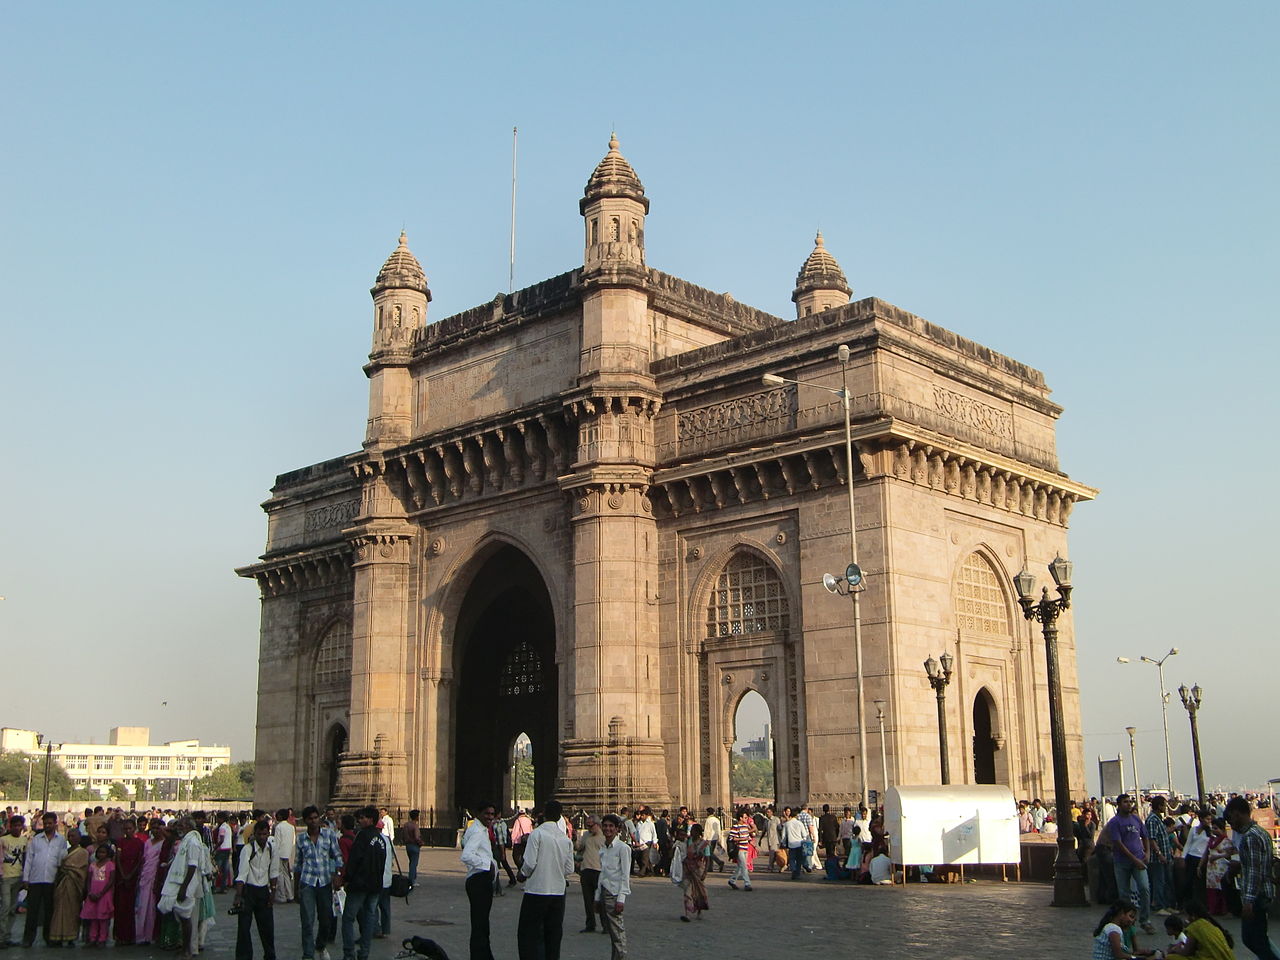 gateway von indien wallpaper,die architektur,heilige orte,gebäude,klassische architektur,monument